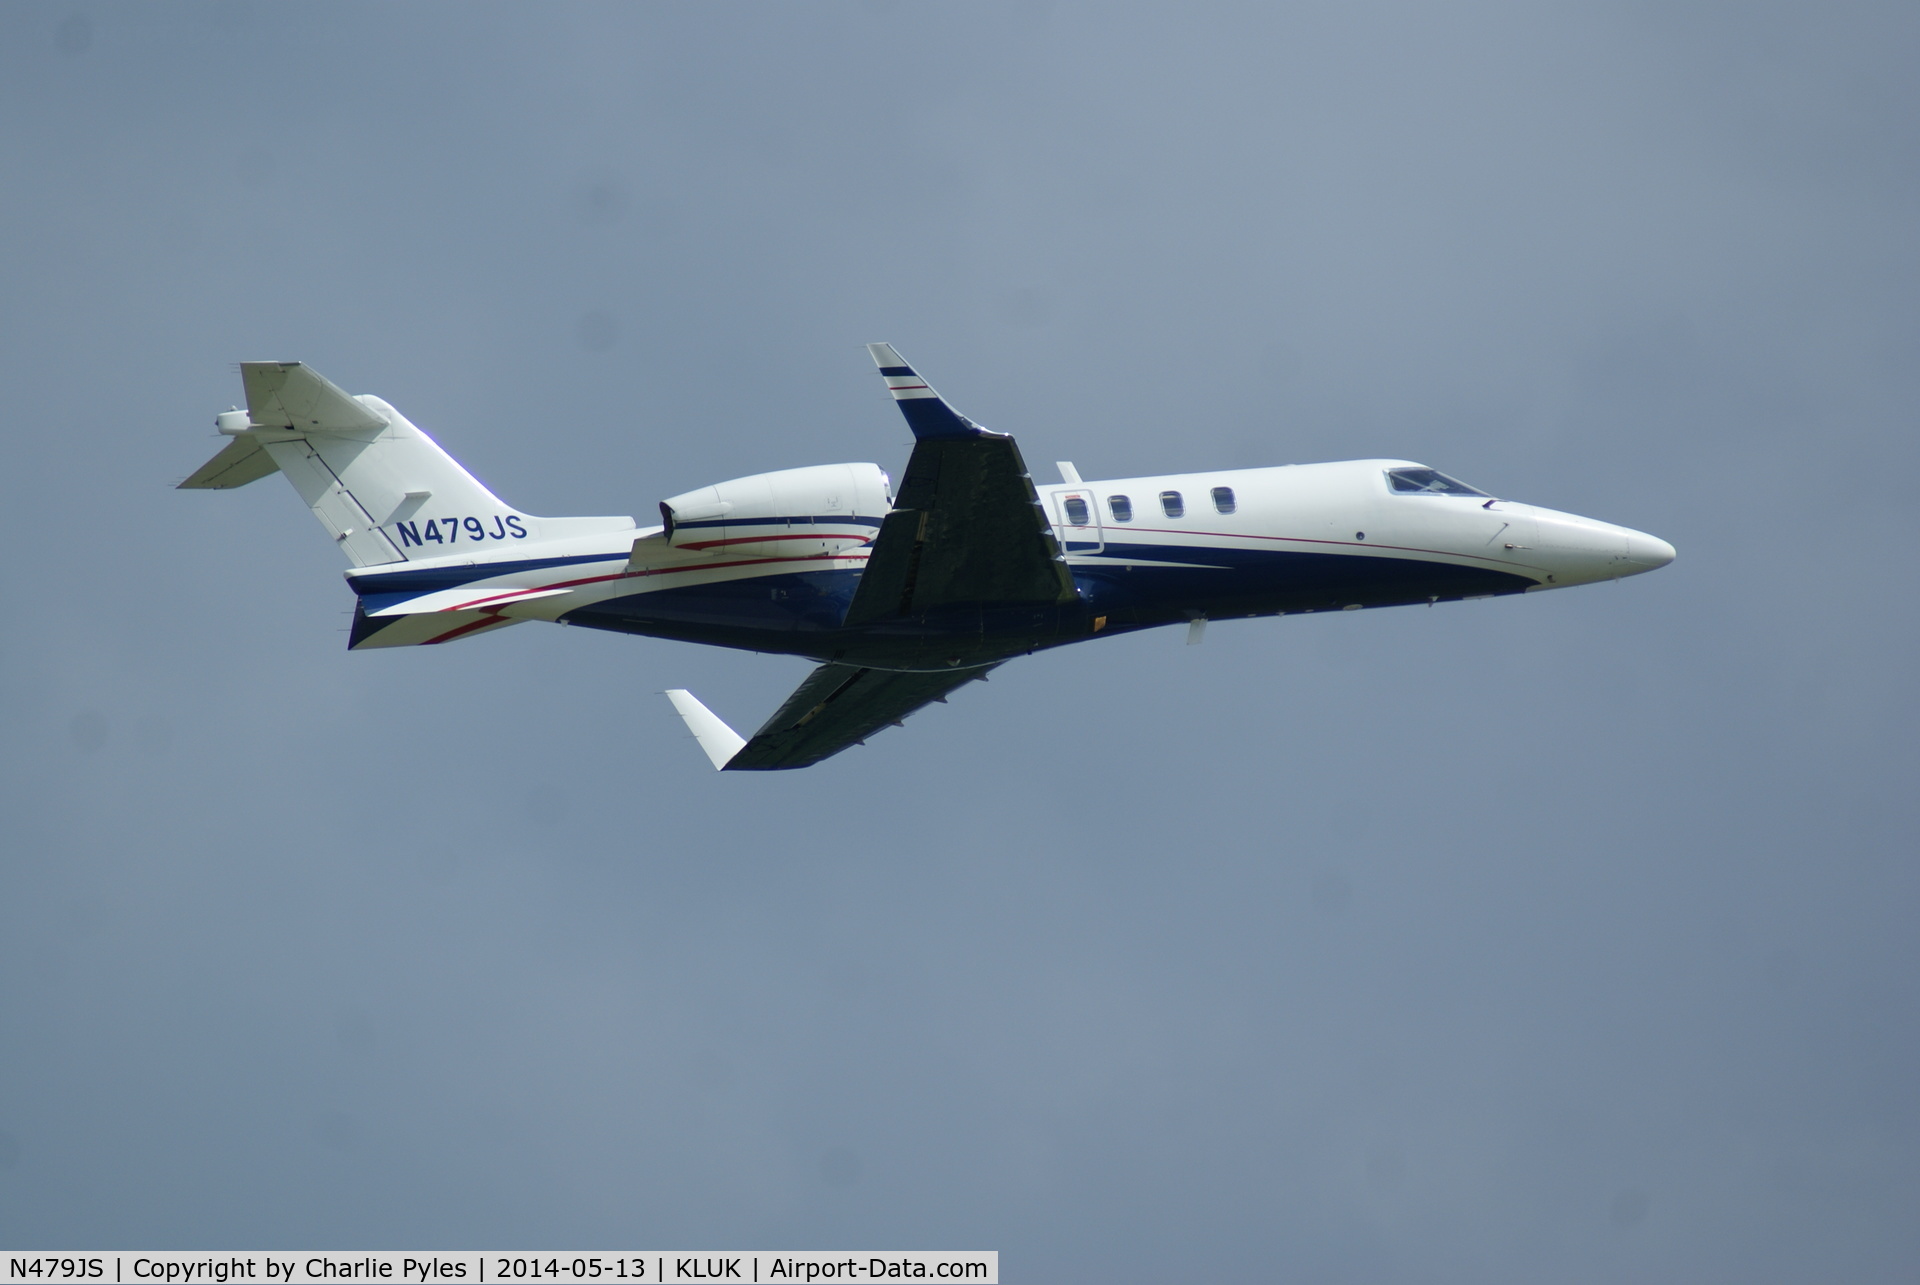 N479JS, 2004 Learjet Inc 45 C/N 2012, -